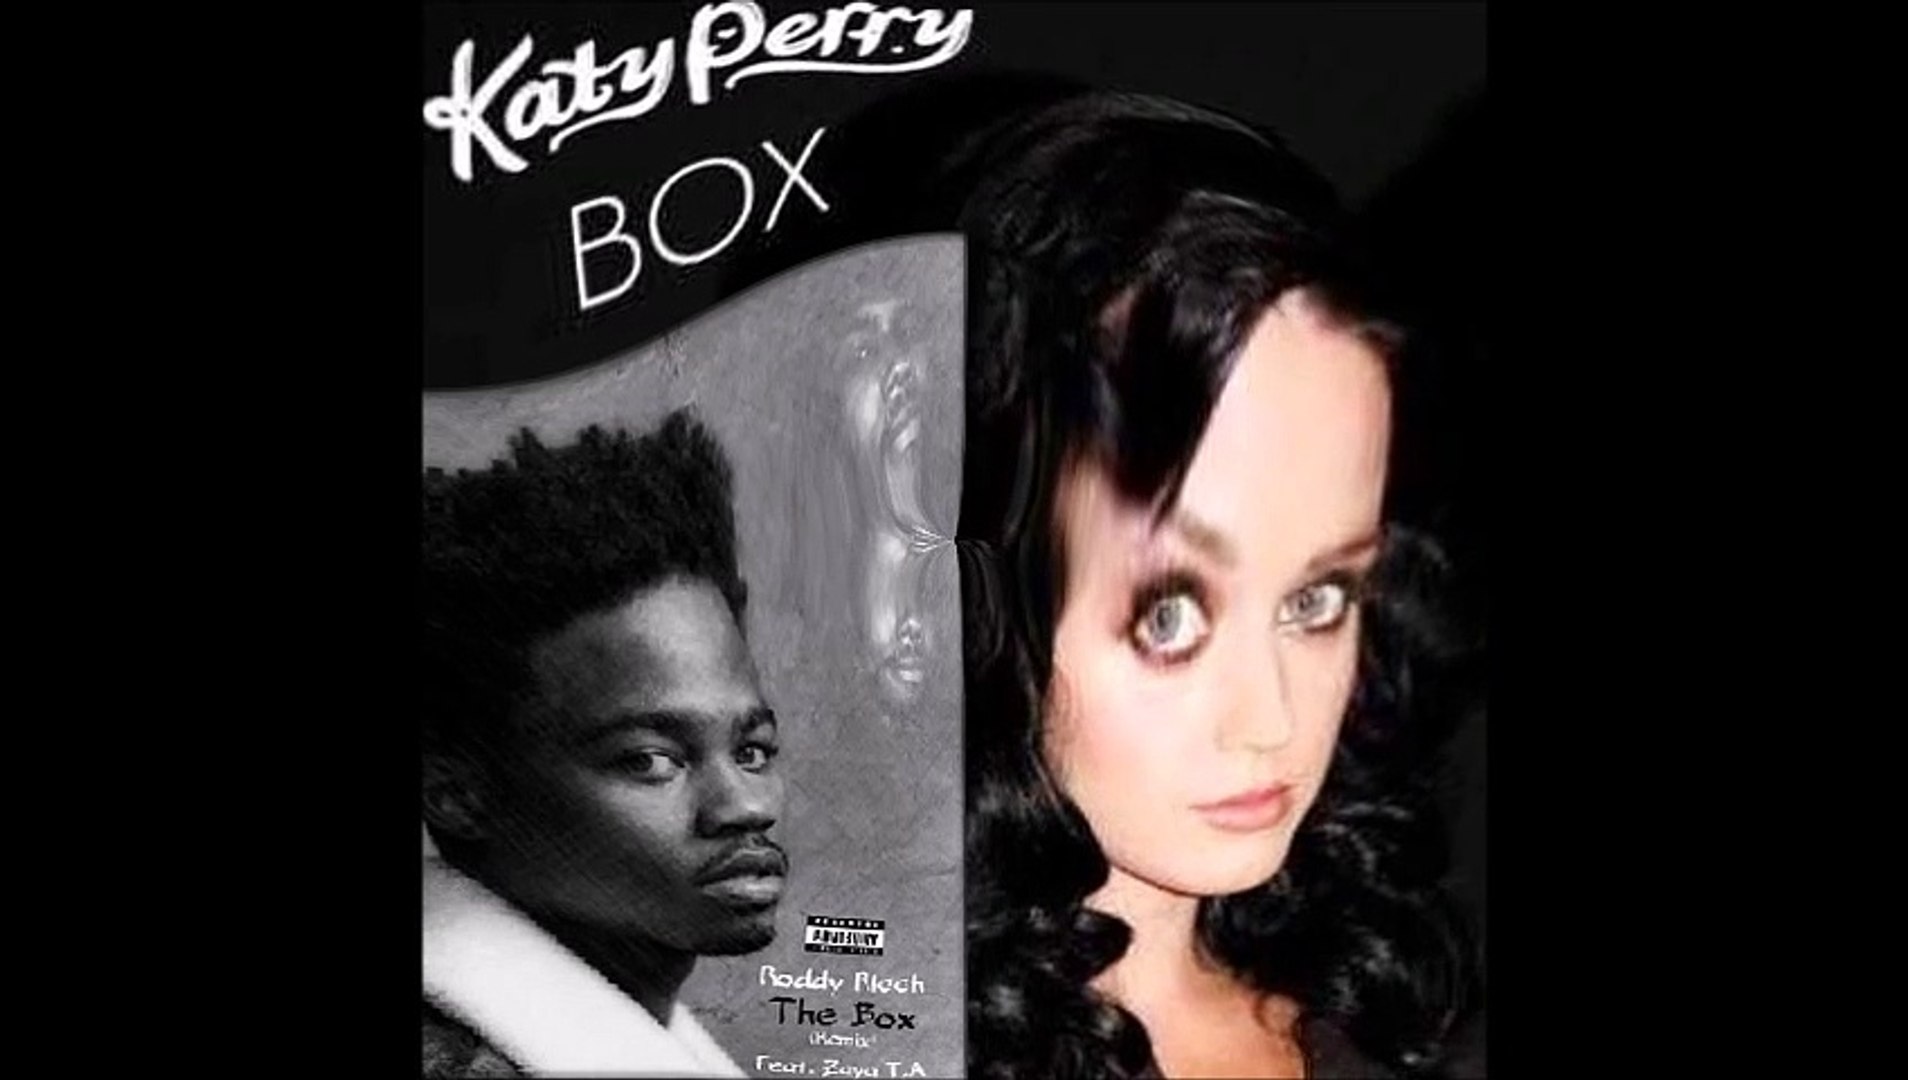 Roddy Ricch vs Katy Perry - The box box (Bastard Batucada Caixas Mashup)